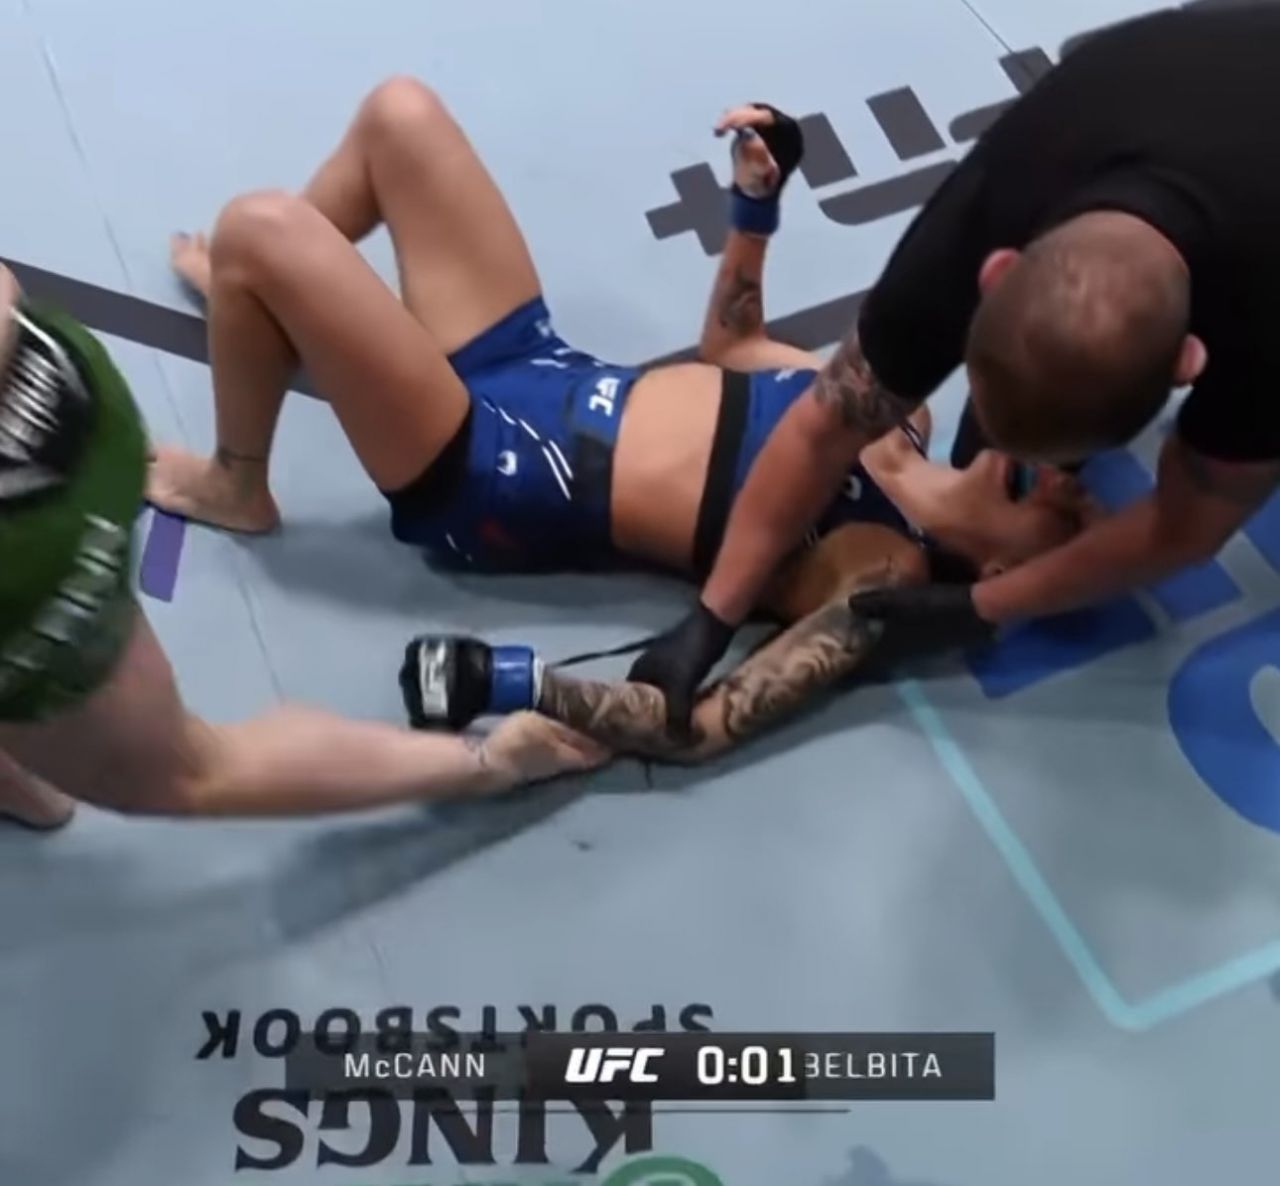 Înfrângere dureroasă pentru Diana Belbiță în UFC! A pierdut încă din prima rundă după ce adversara a fost la un pas să îi rupă mâna _3